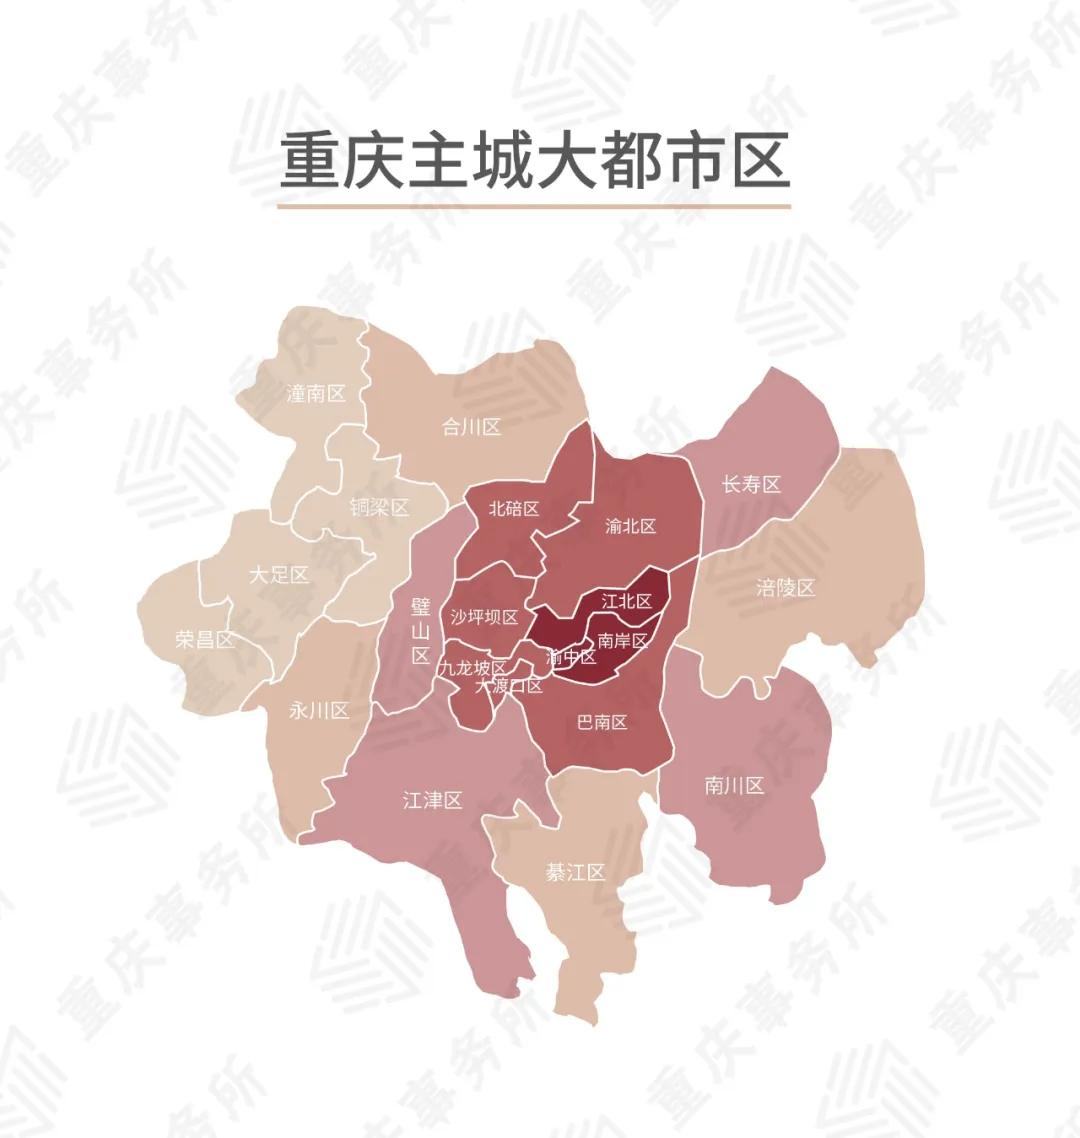 重庆主城九区分布图图片